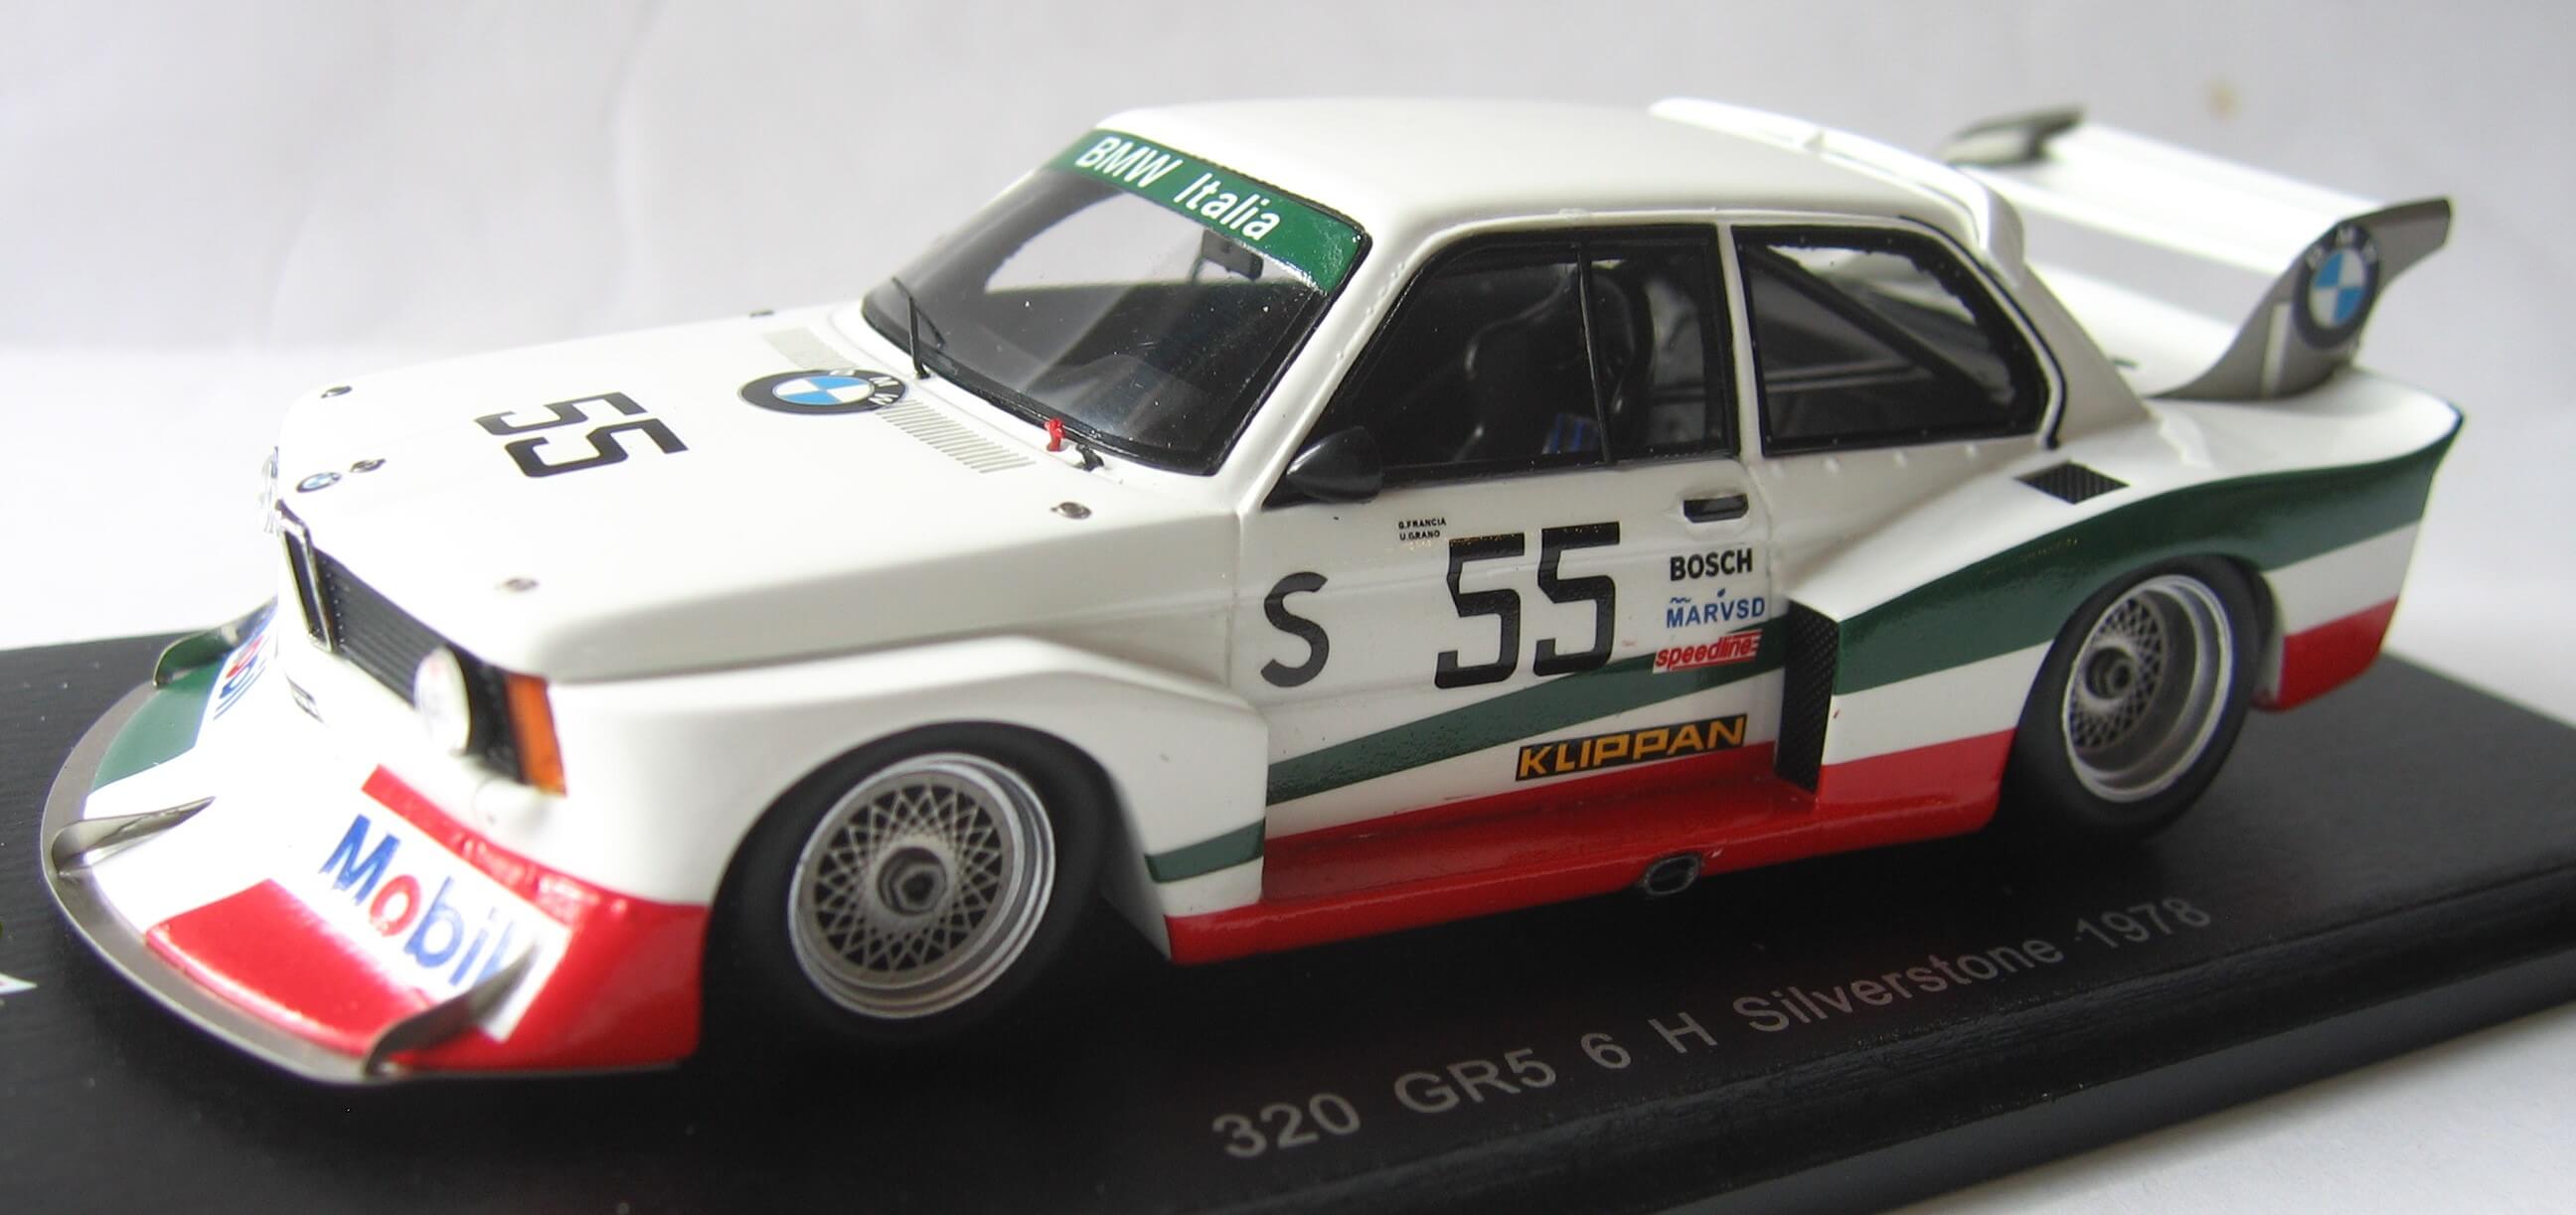 BMW 320i Group 5 Silverstone